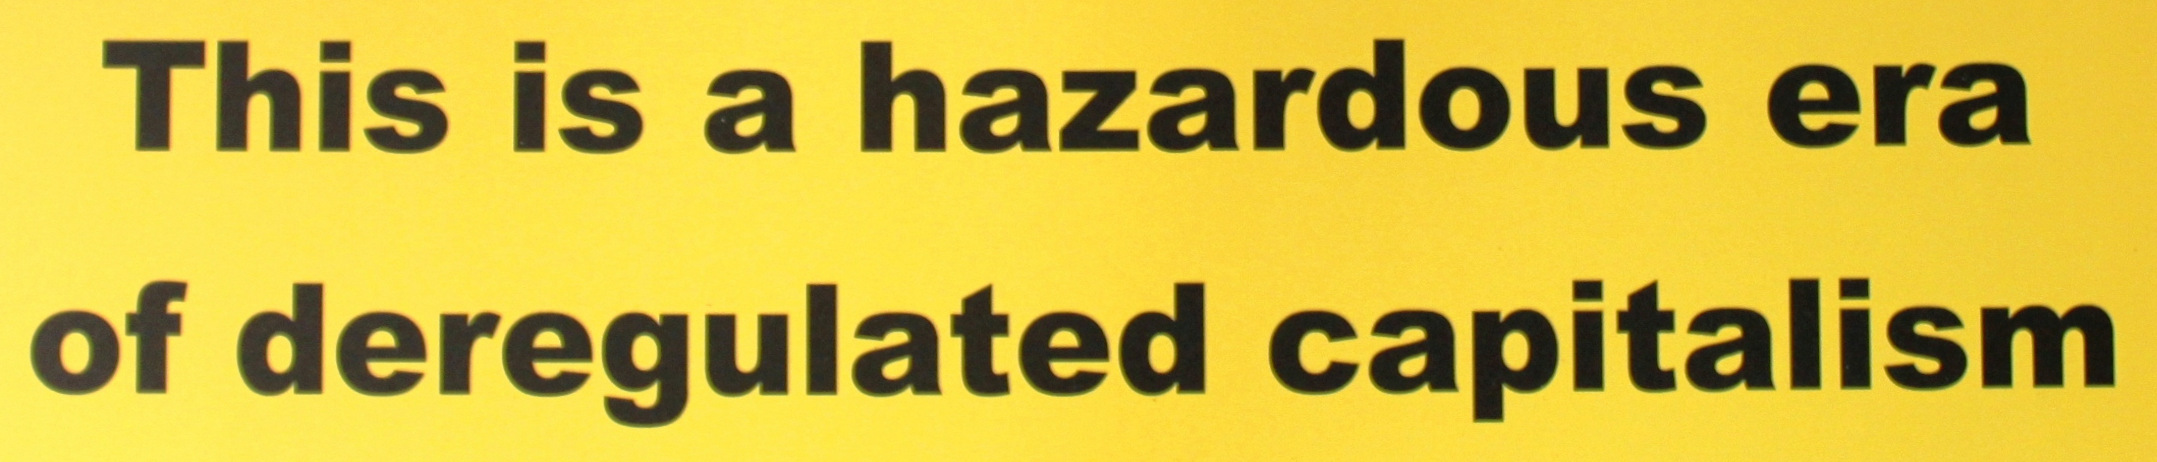 Hazardous era cropped